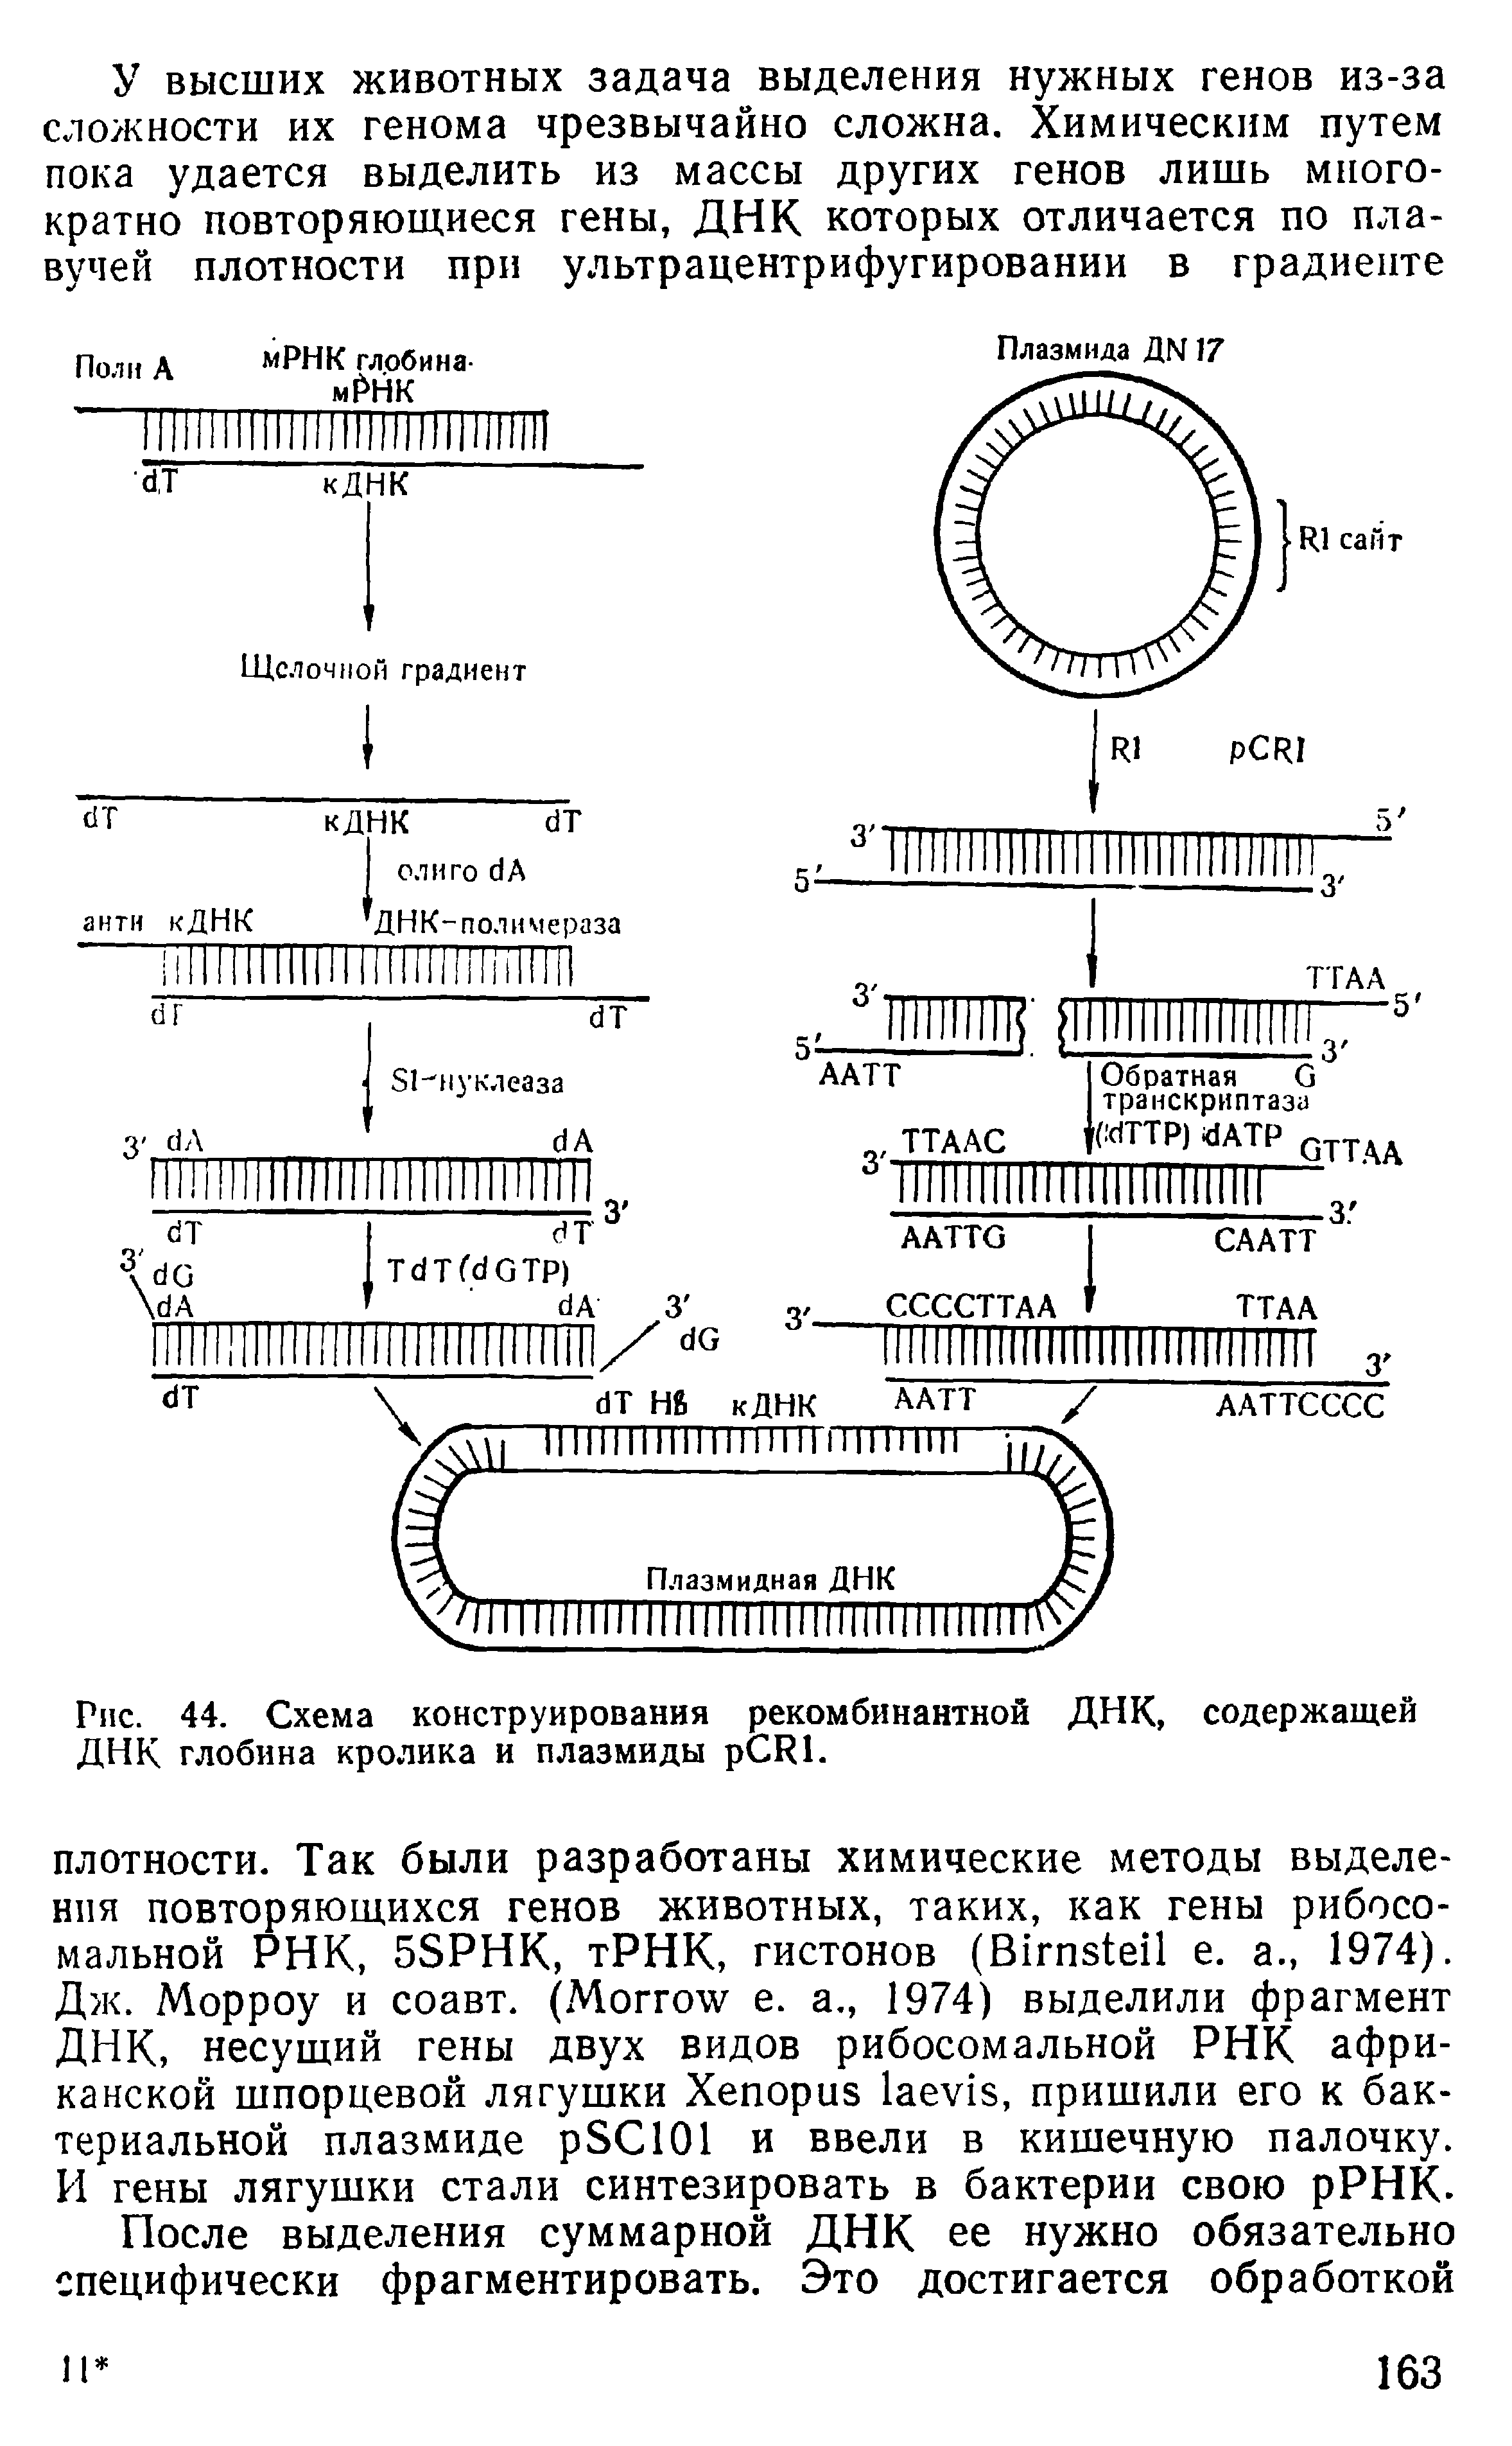 Рис. 44. Схема конструирования рекомбинантной ДНК, содержащей ДНК глобина кролика и плазмиды рСИ1.